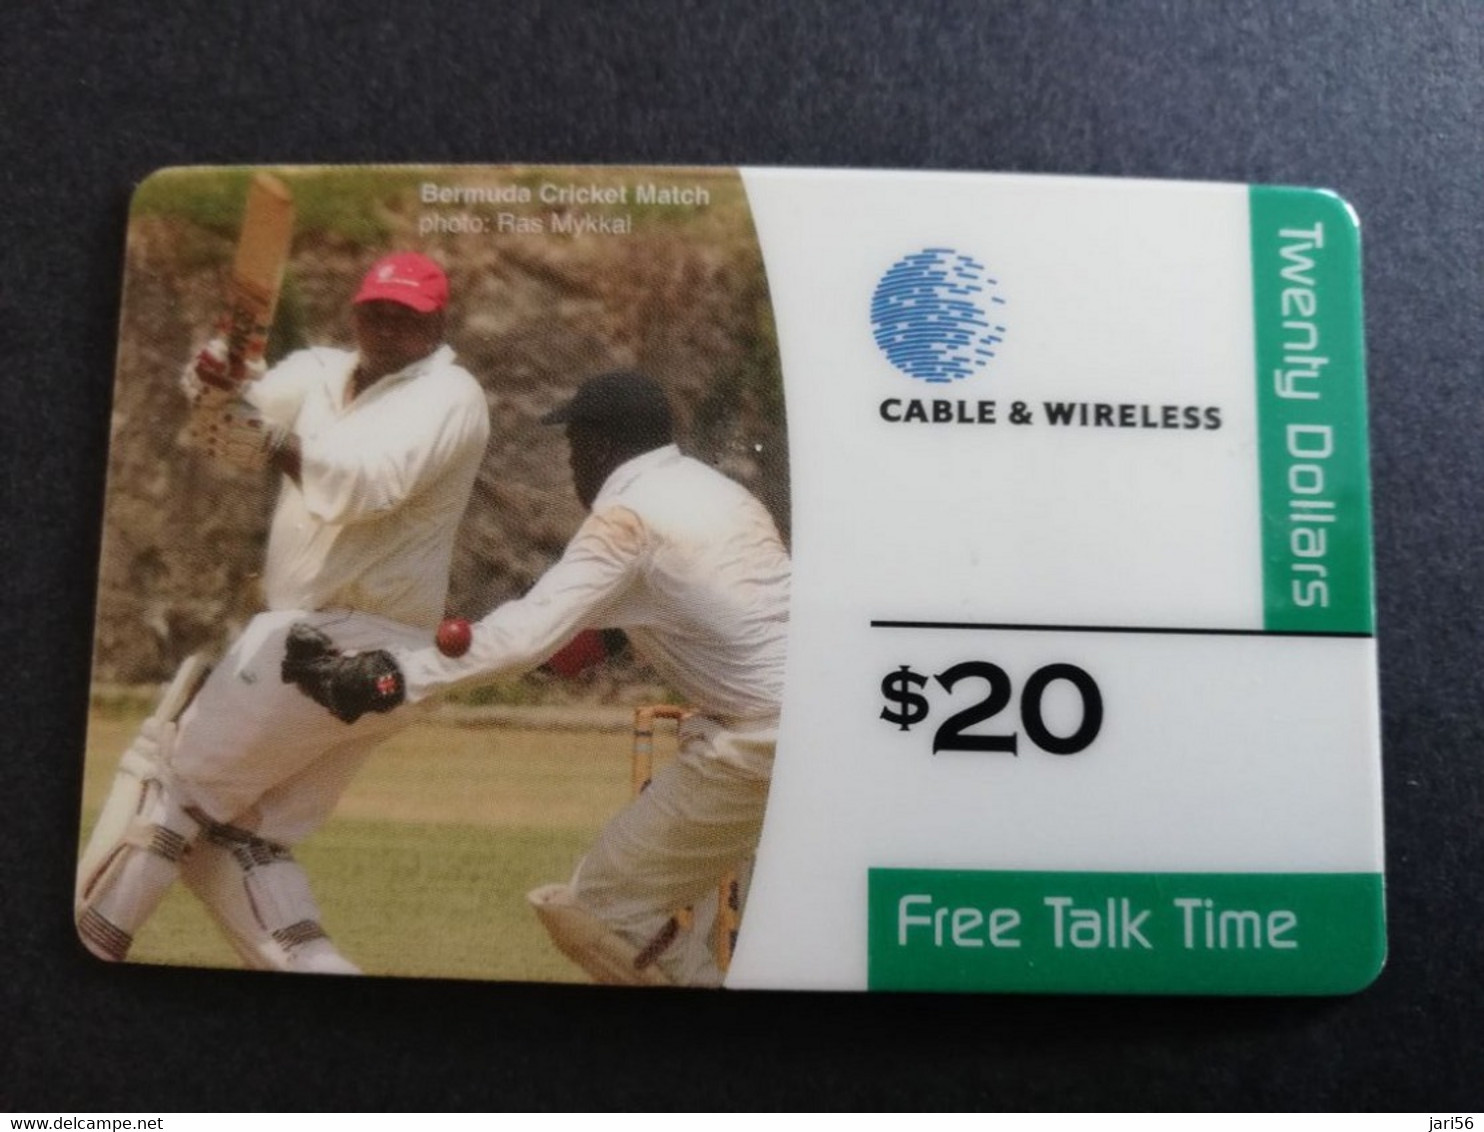 BERMUDA  $20  C&W  BERMUDA     BERMUDA CRICKET MATCH  THICK CARD   PREPAID CARD  Fine USED  **6119** - Bermudes